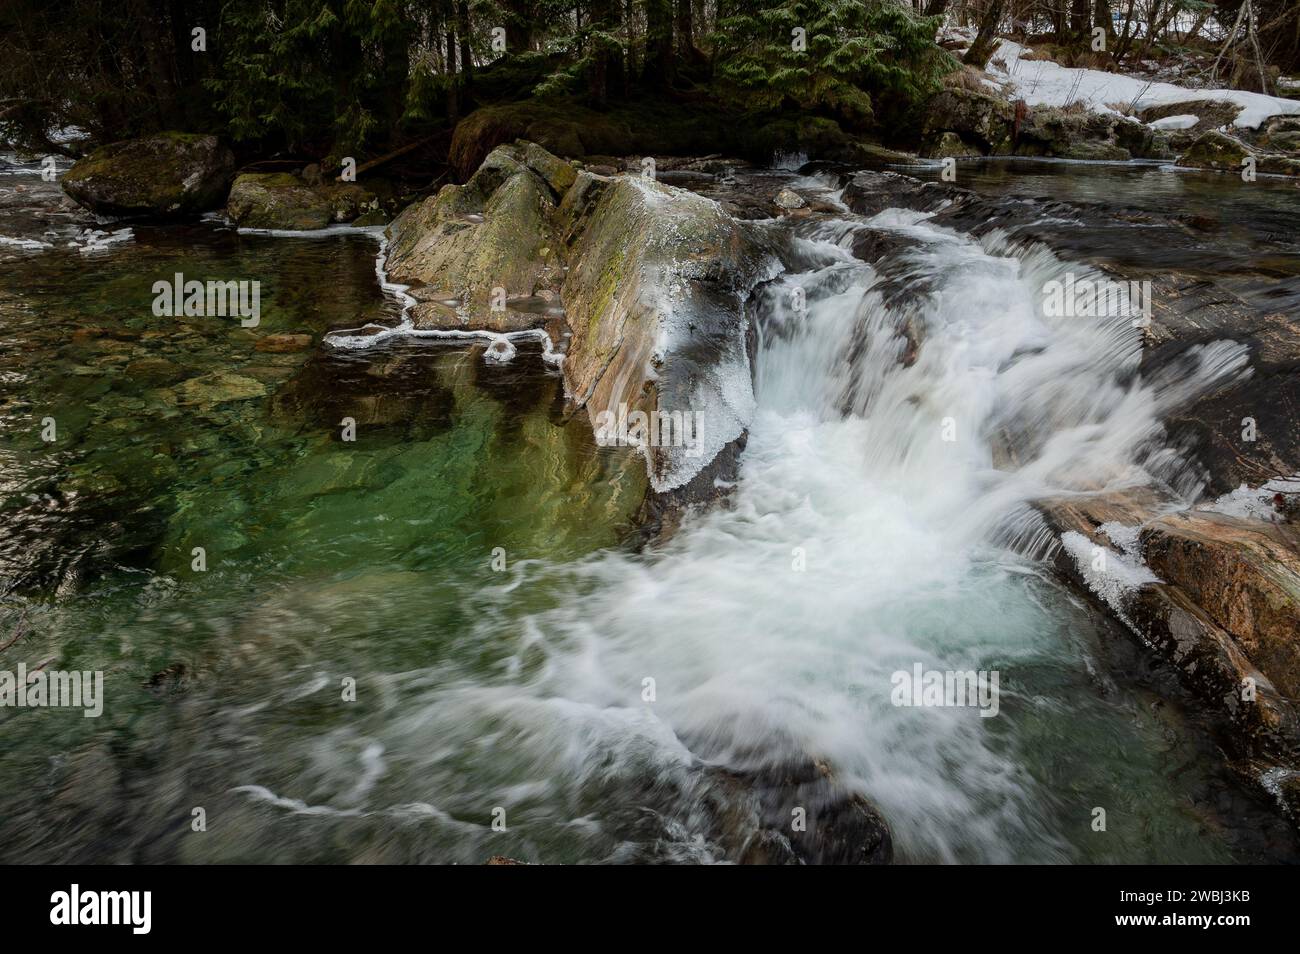 Un ruisseau de montagne serein coule sur des rochers recouverts de mousse avec des plaques de neige accrochées aux rives boisées. Banque D'Images